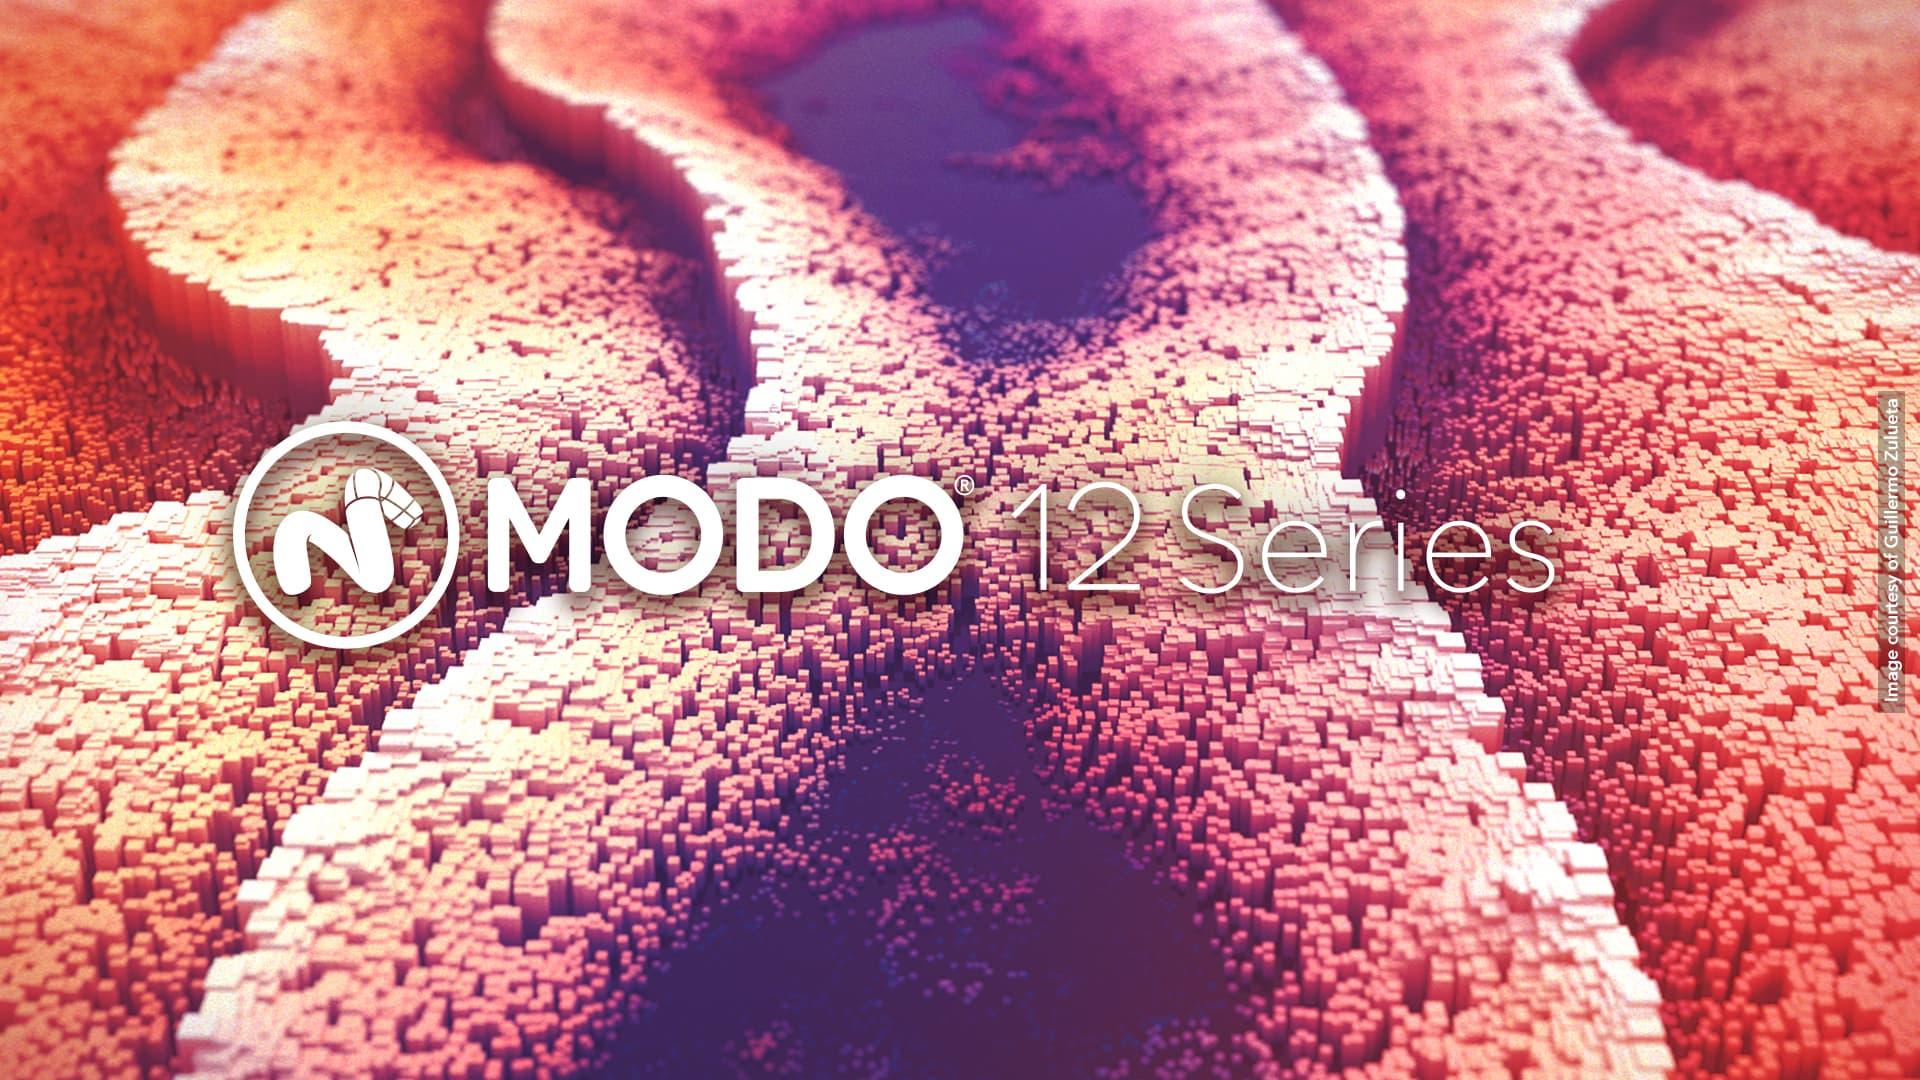 Modo 12 release